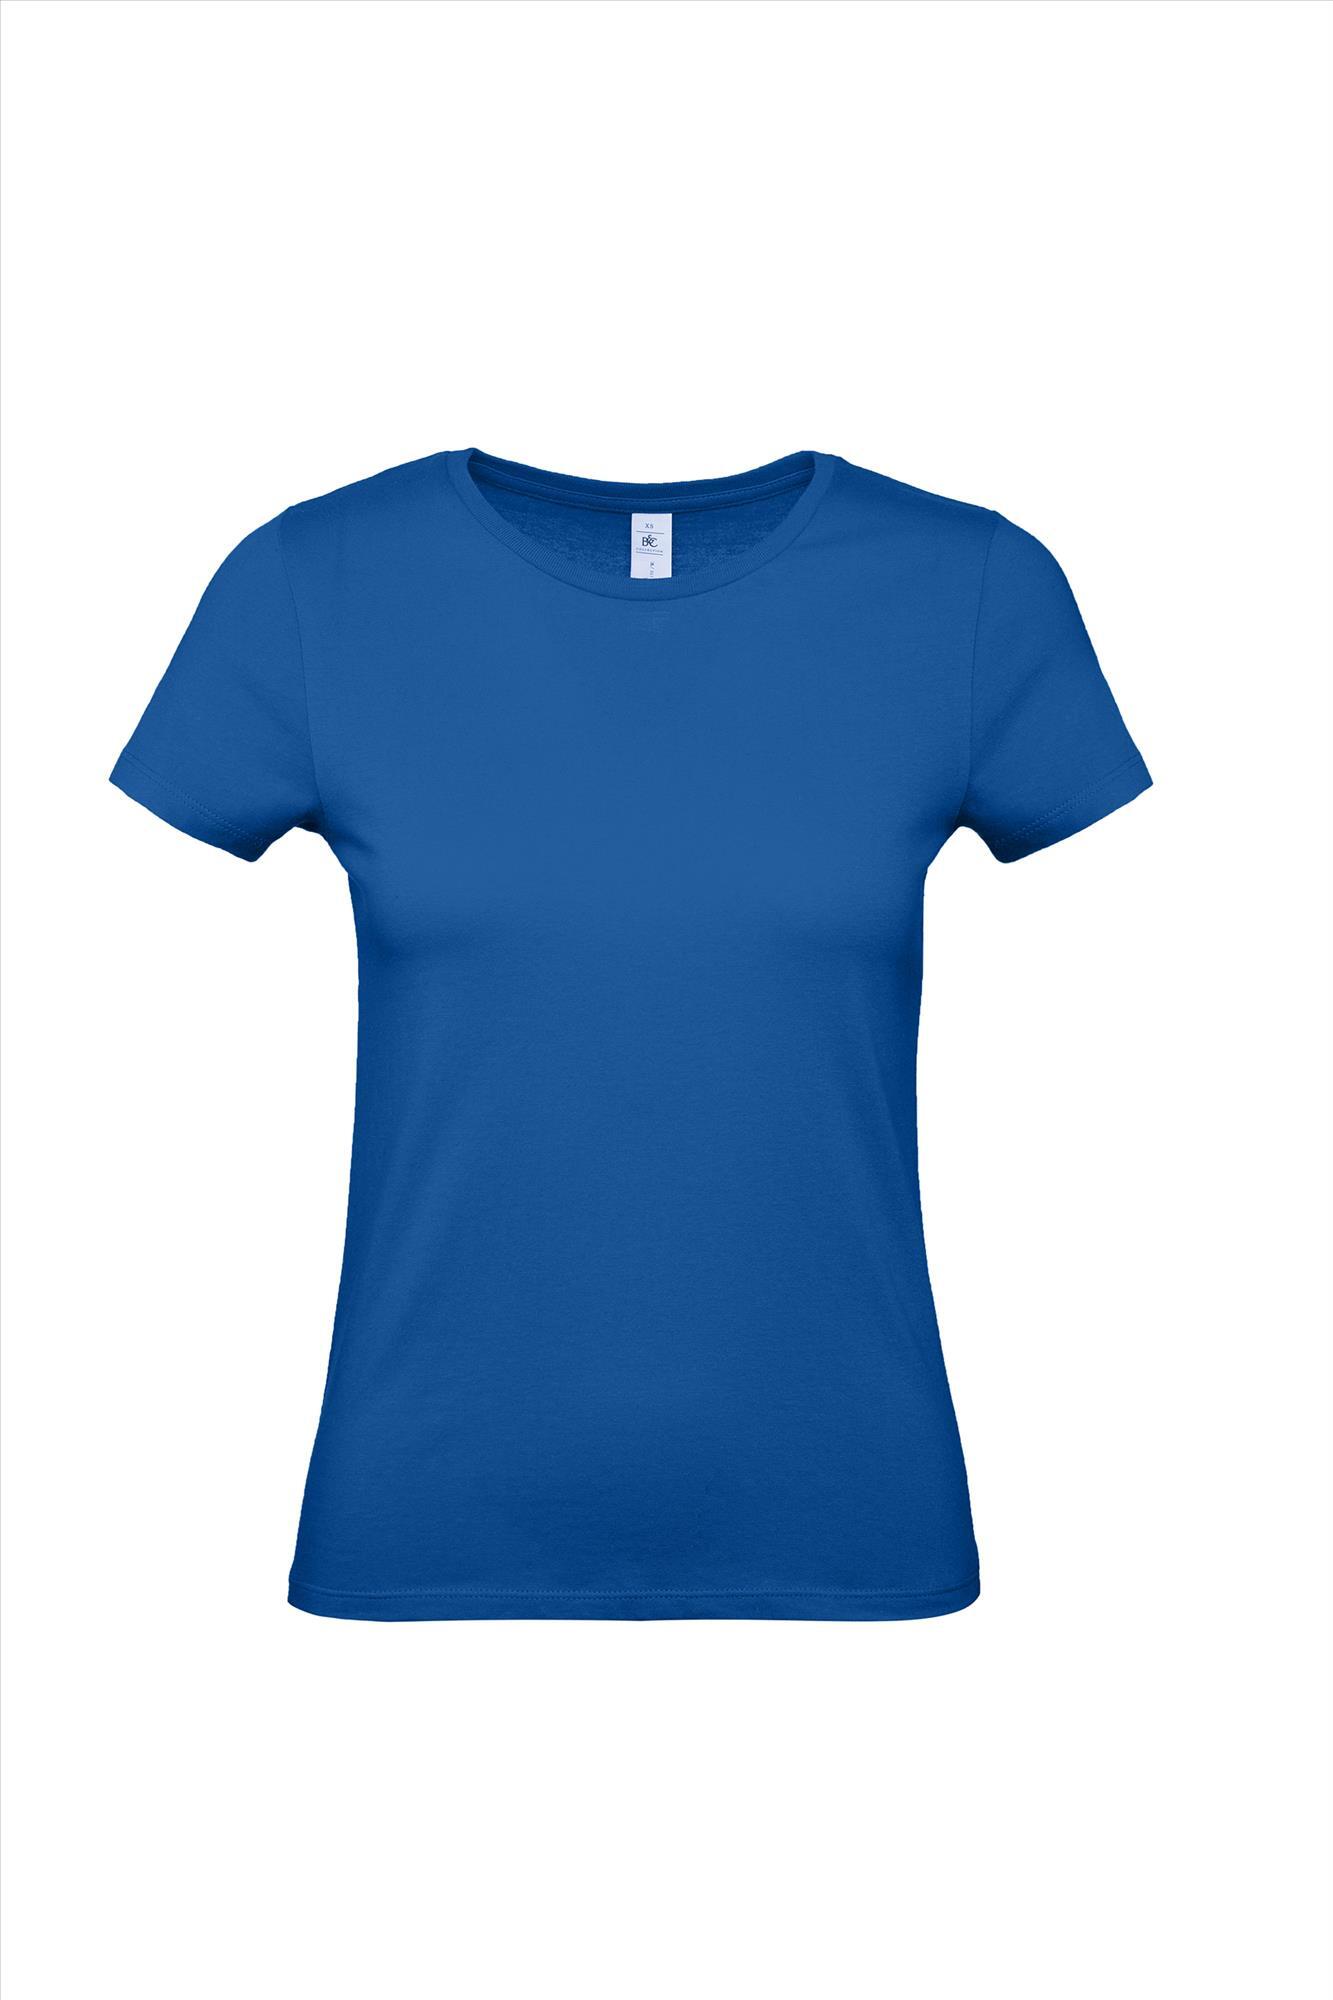 Modern T-shirt voor haar dames shirt royal blauw